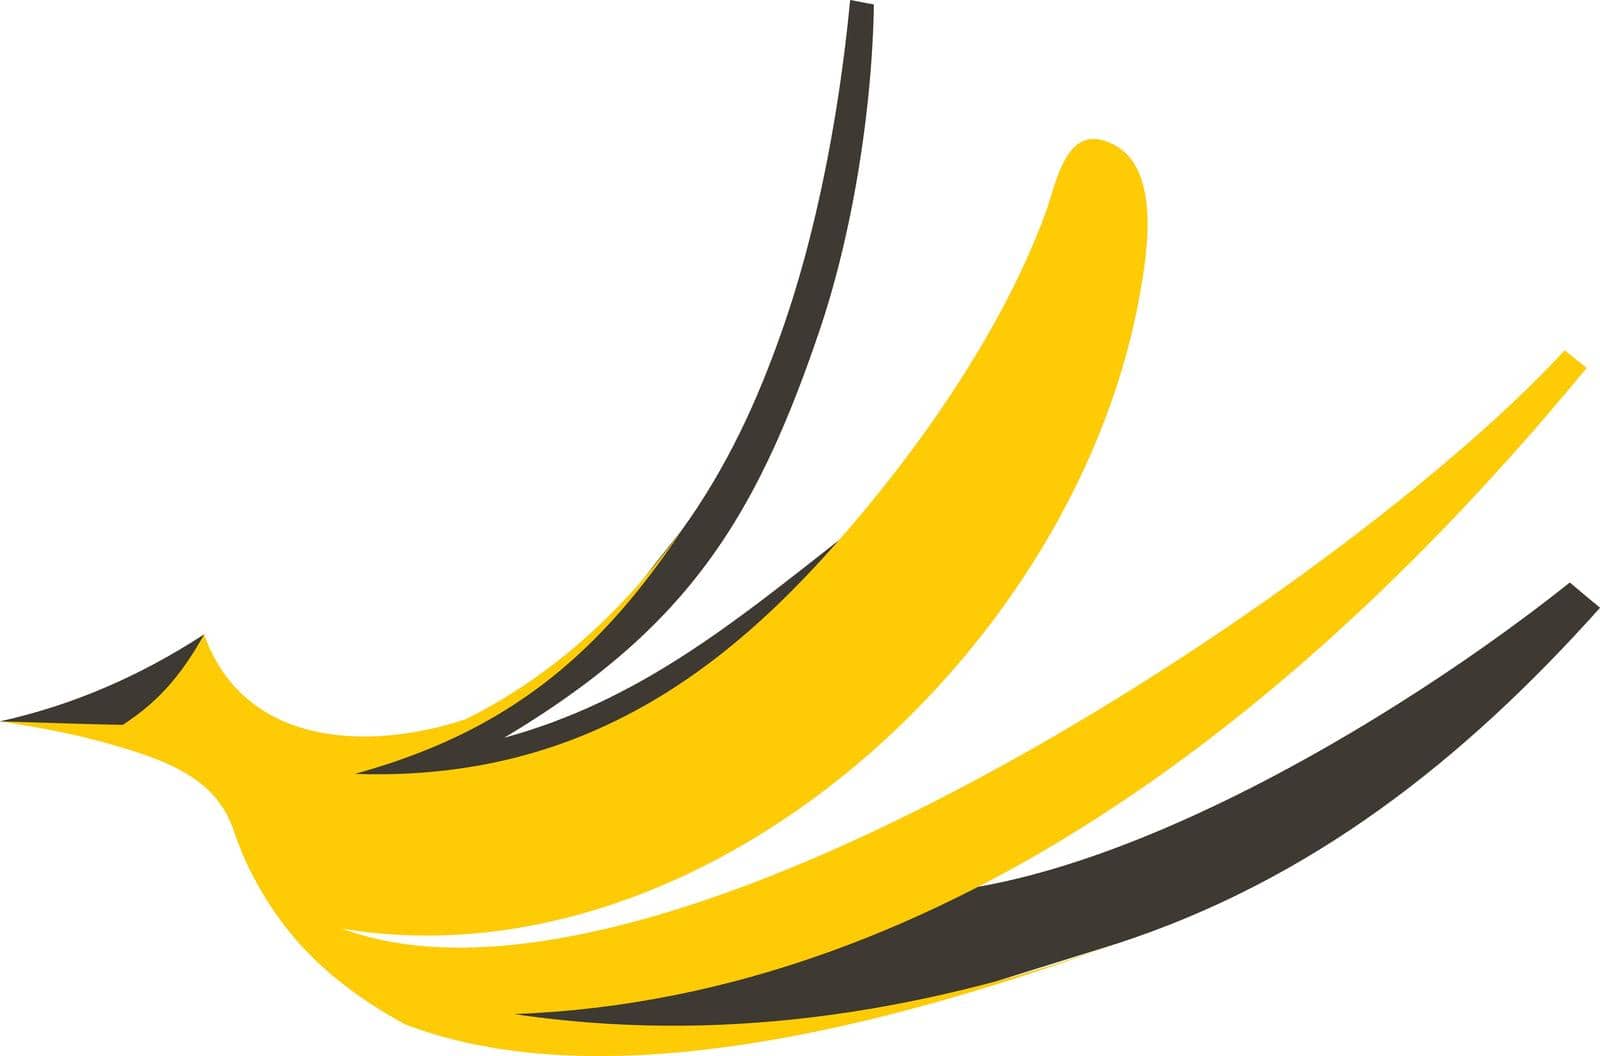 Banana peel icon, flat style by ylivdesign